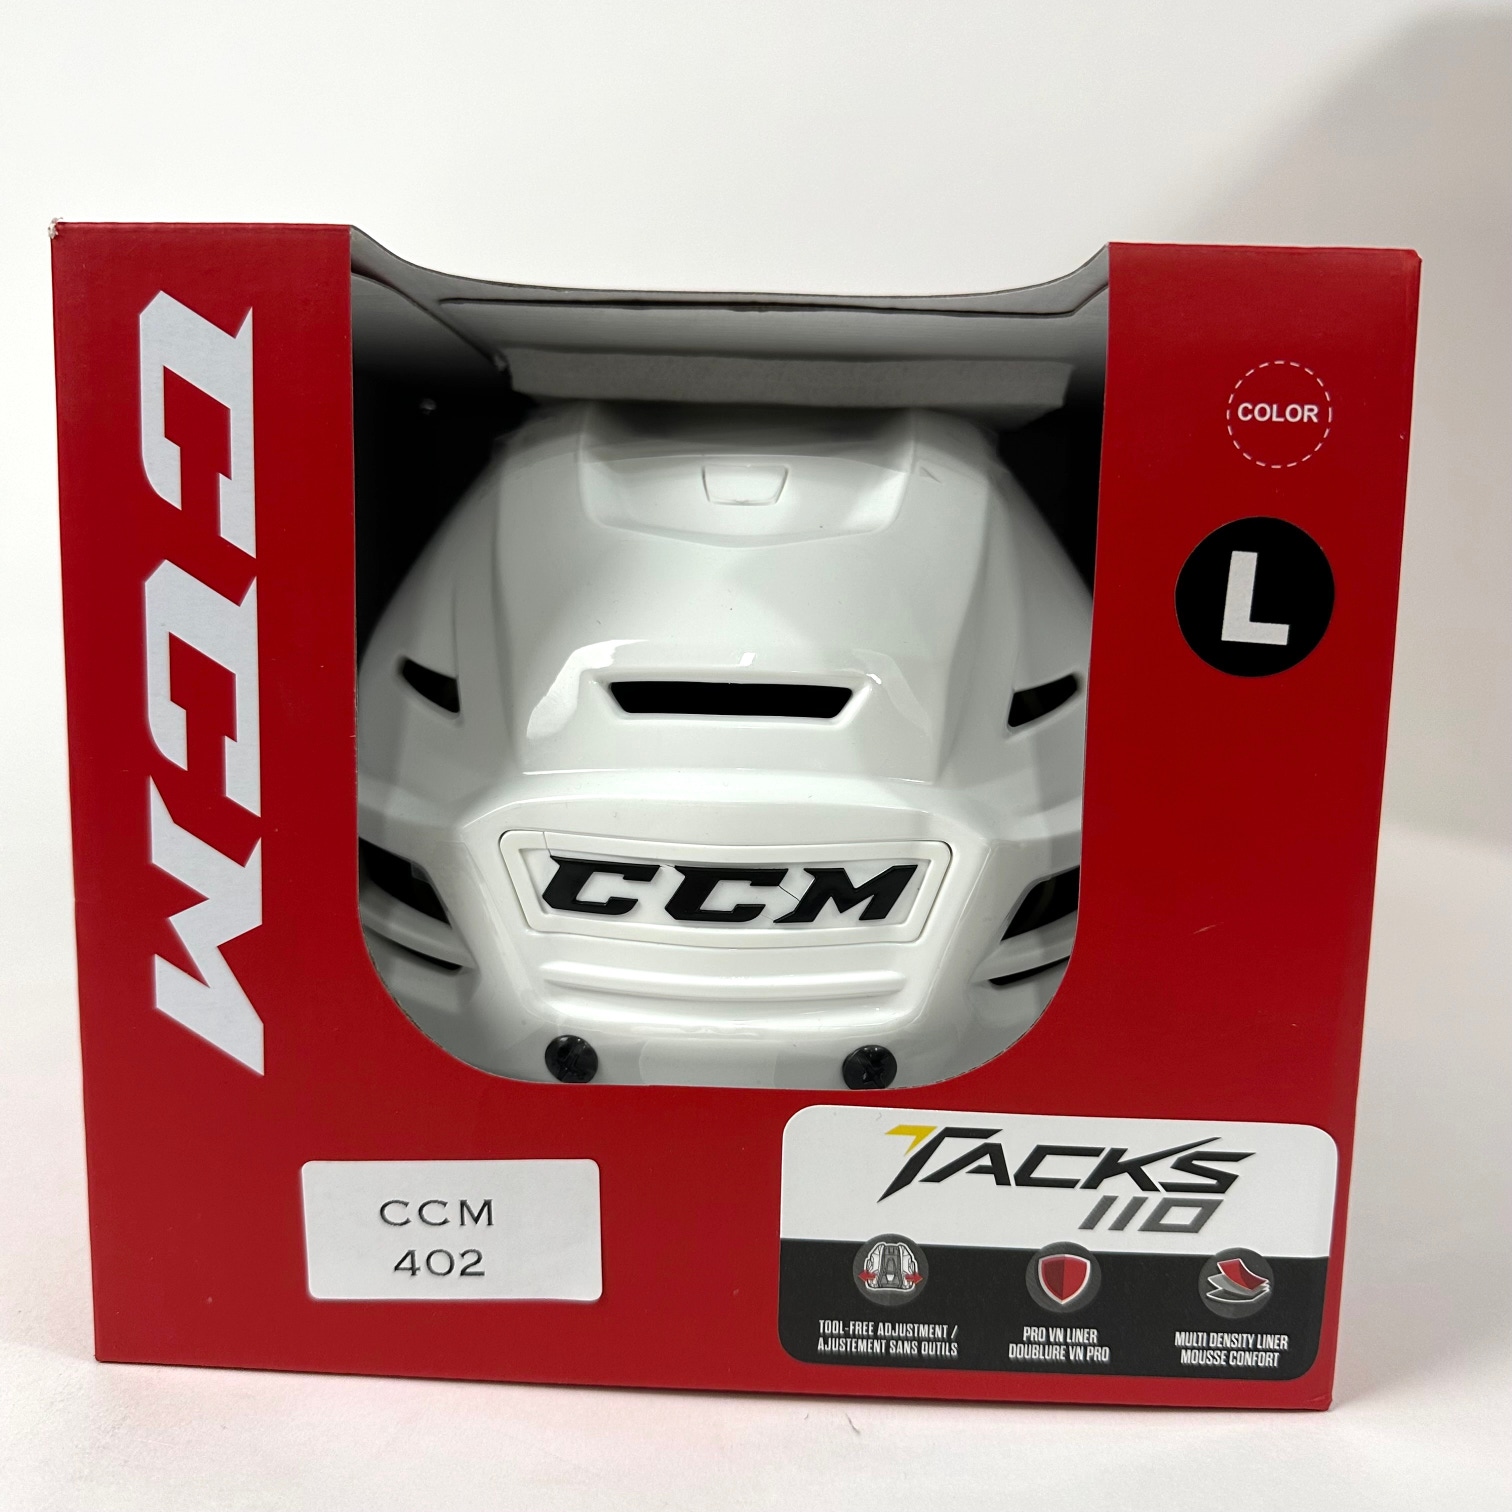 Brand New CCM Tacks 110 Helmet In Box - White - Large - #CCM402